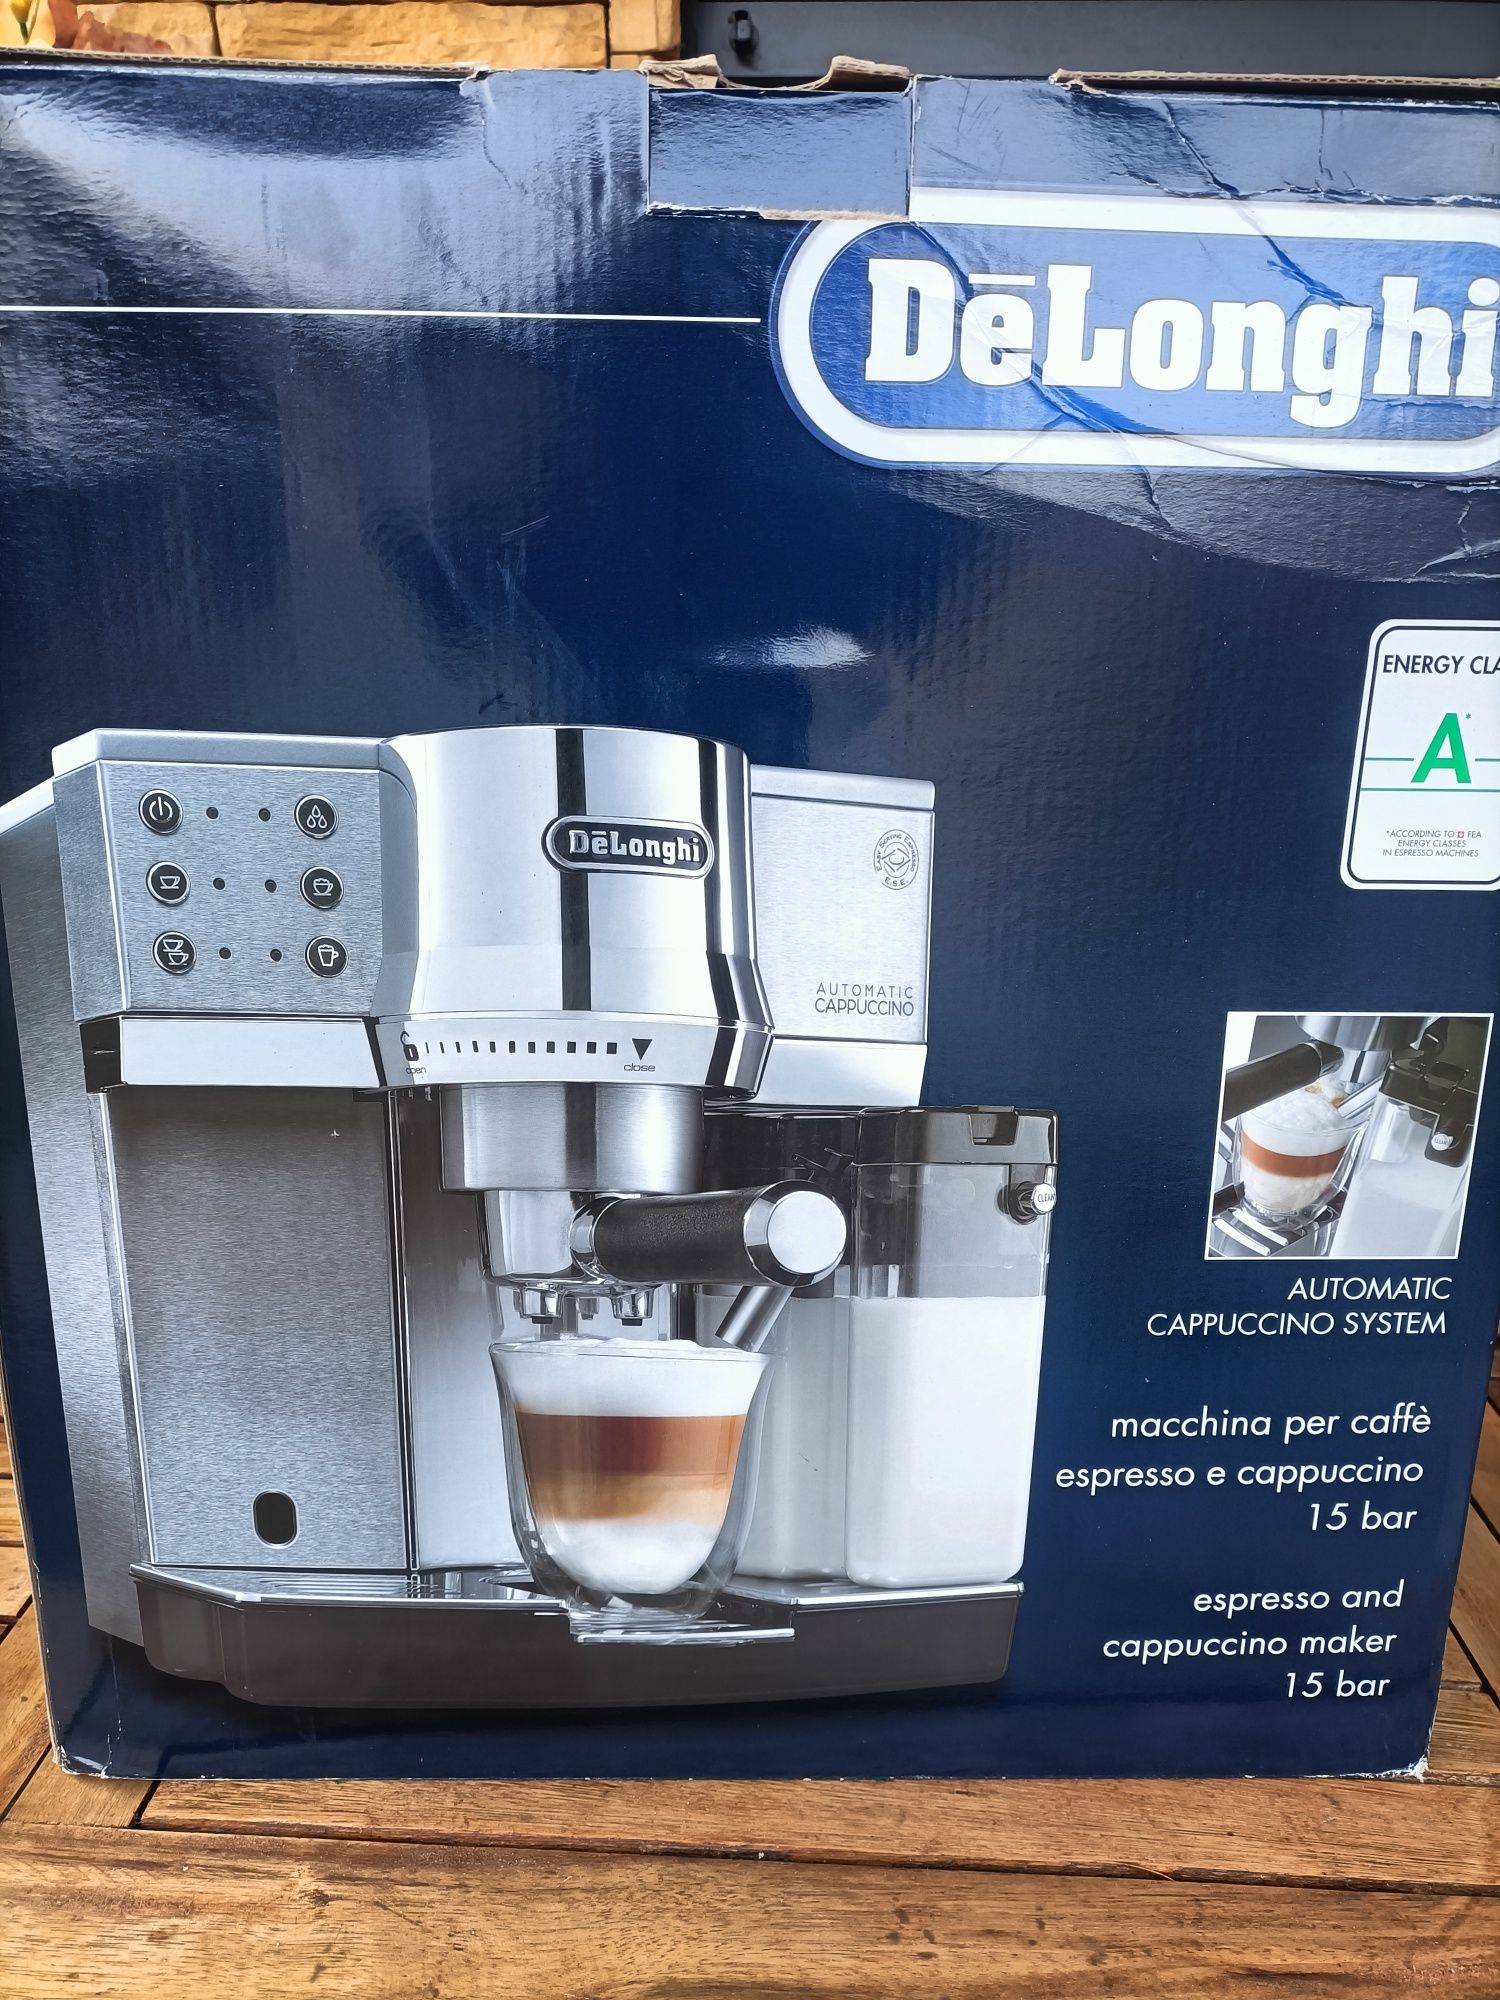 Sprzedam ekspres do kawy DeLonghi 860 sporadycznie używany